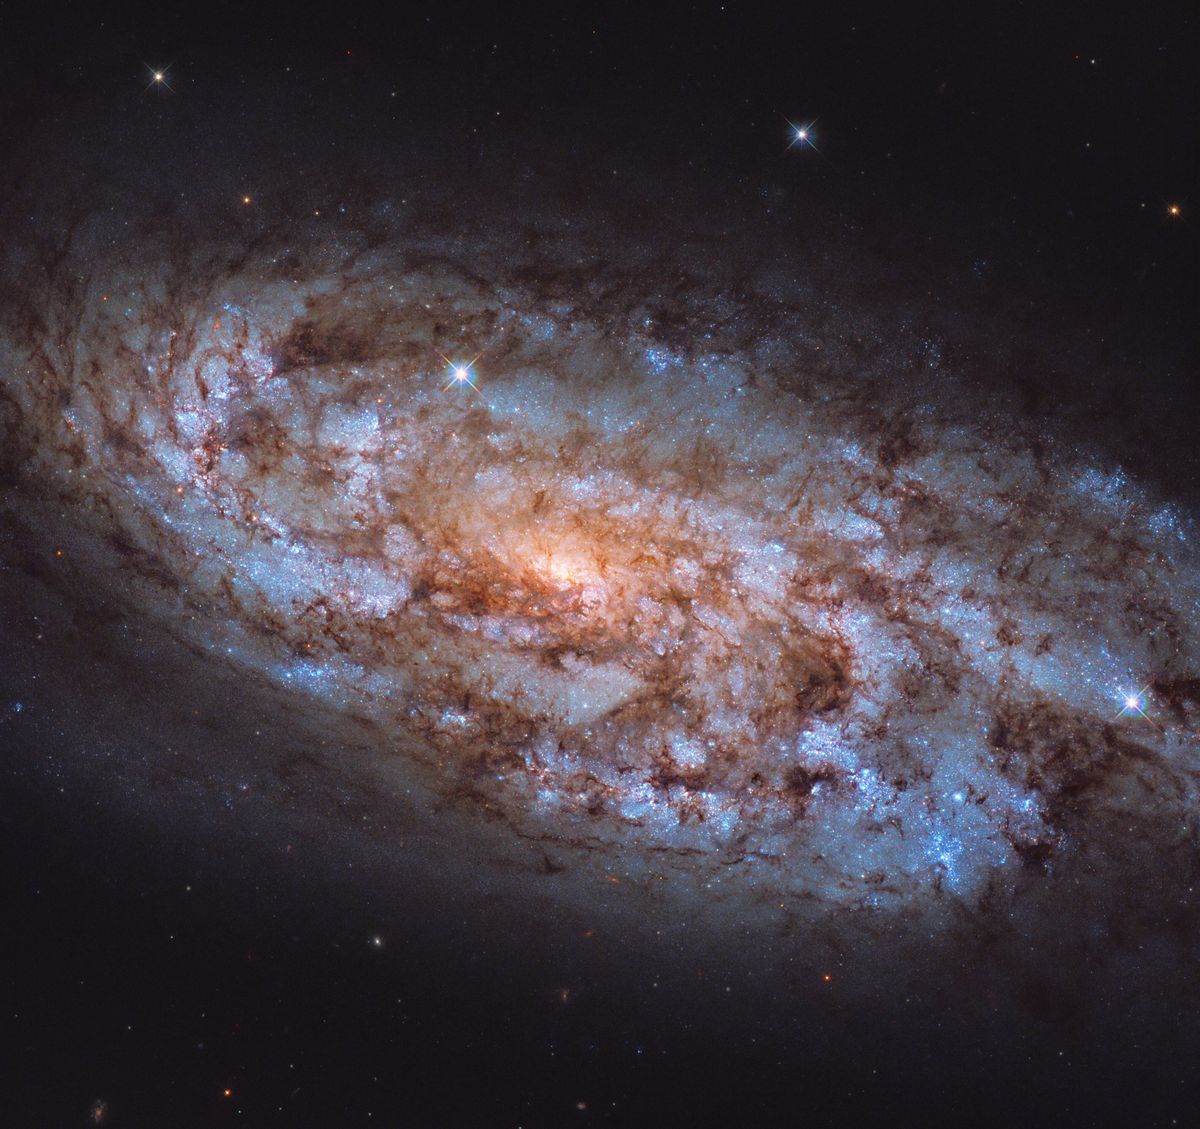 Détails magnifiques d'une galaxie spirale très féconde